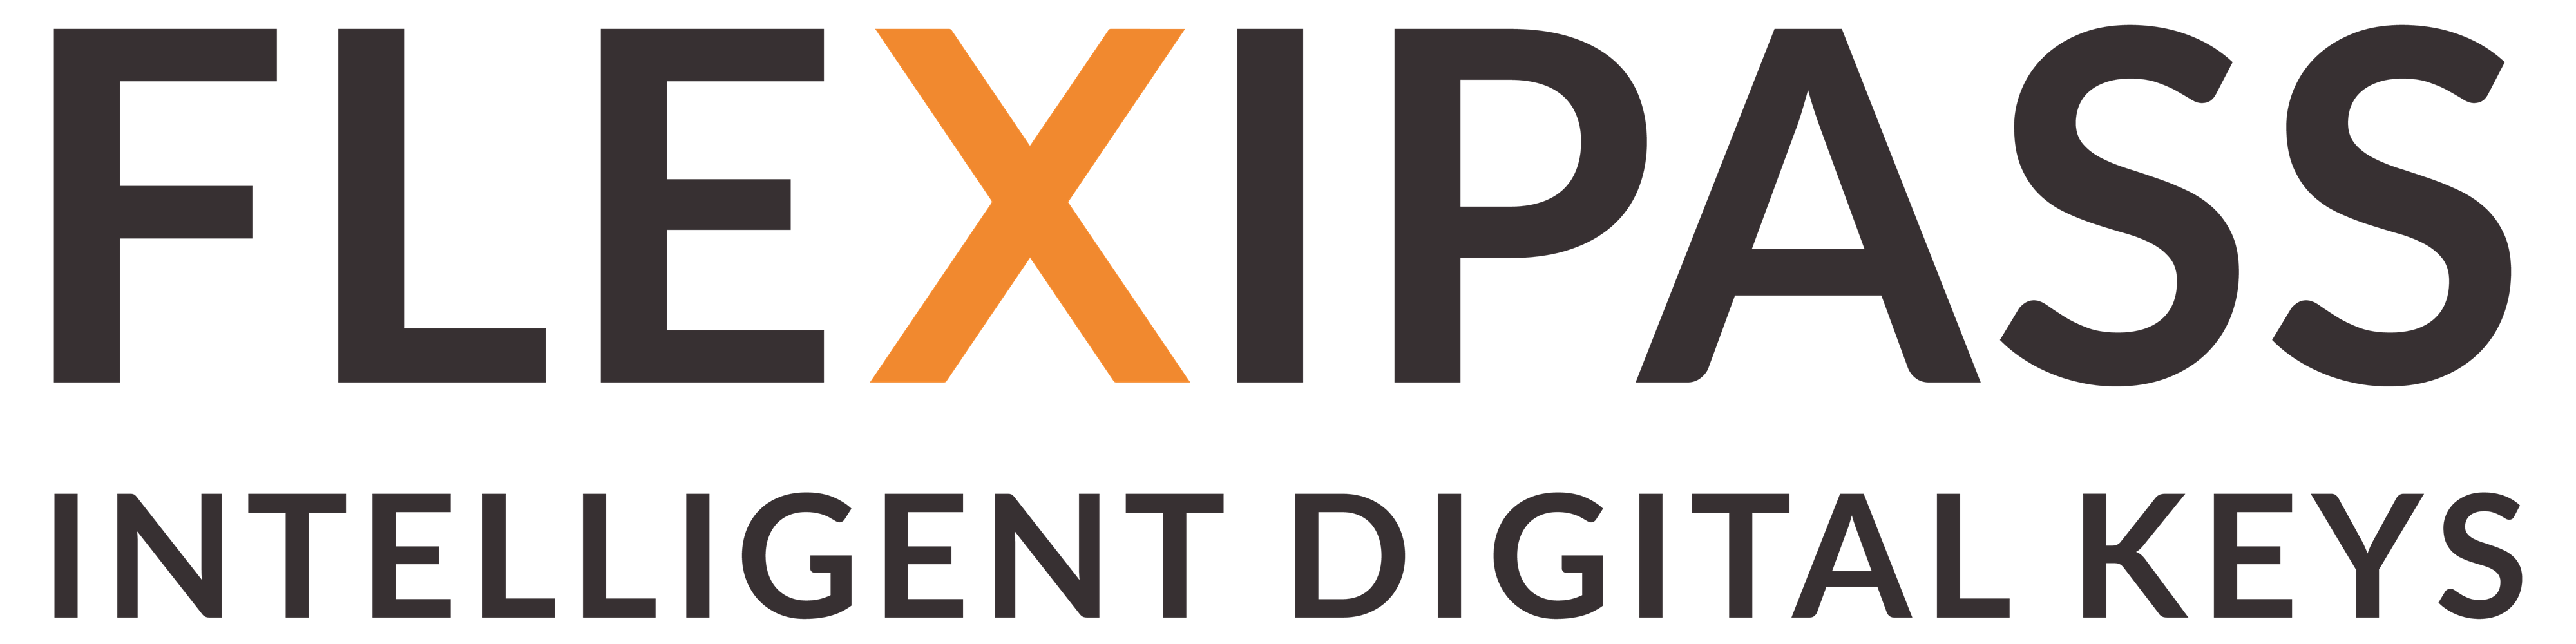 FLEXIPASS logo